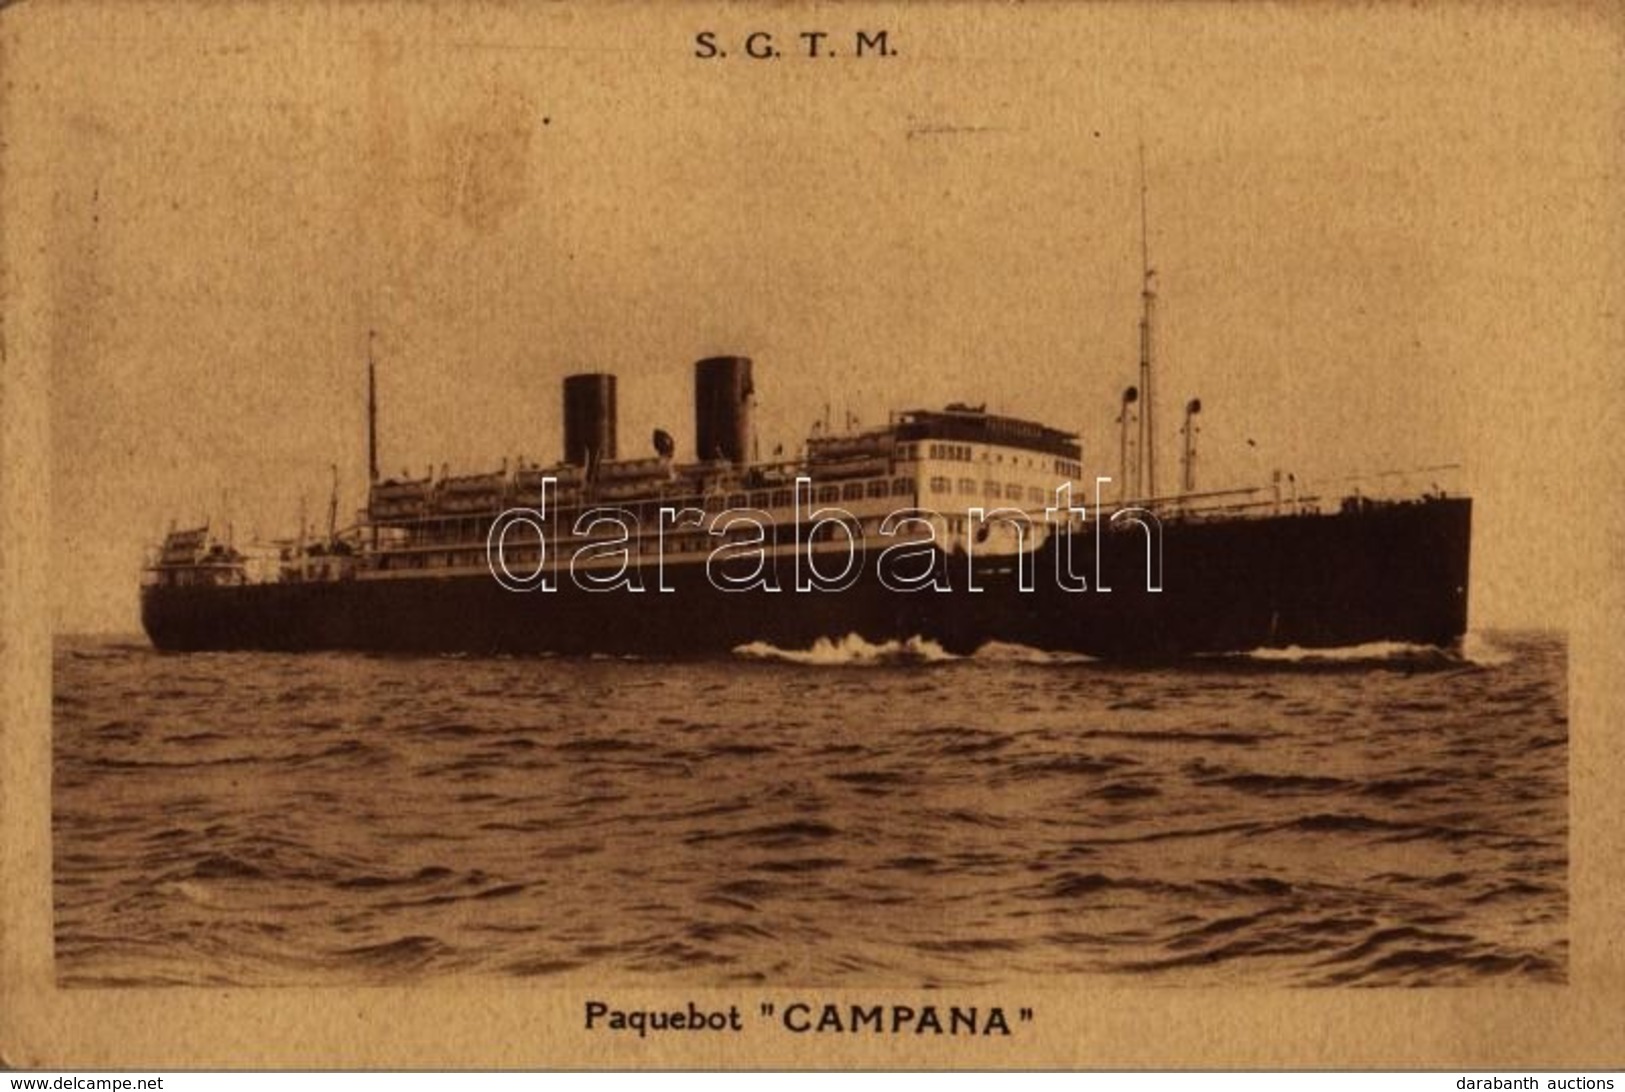 T2/T3 1939 SGTM (Société Générale De Transport Maritimes) Paquebot 'Campana' / French Ocean Liner 'Campana' (EK) - Unclassified